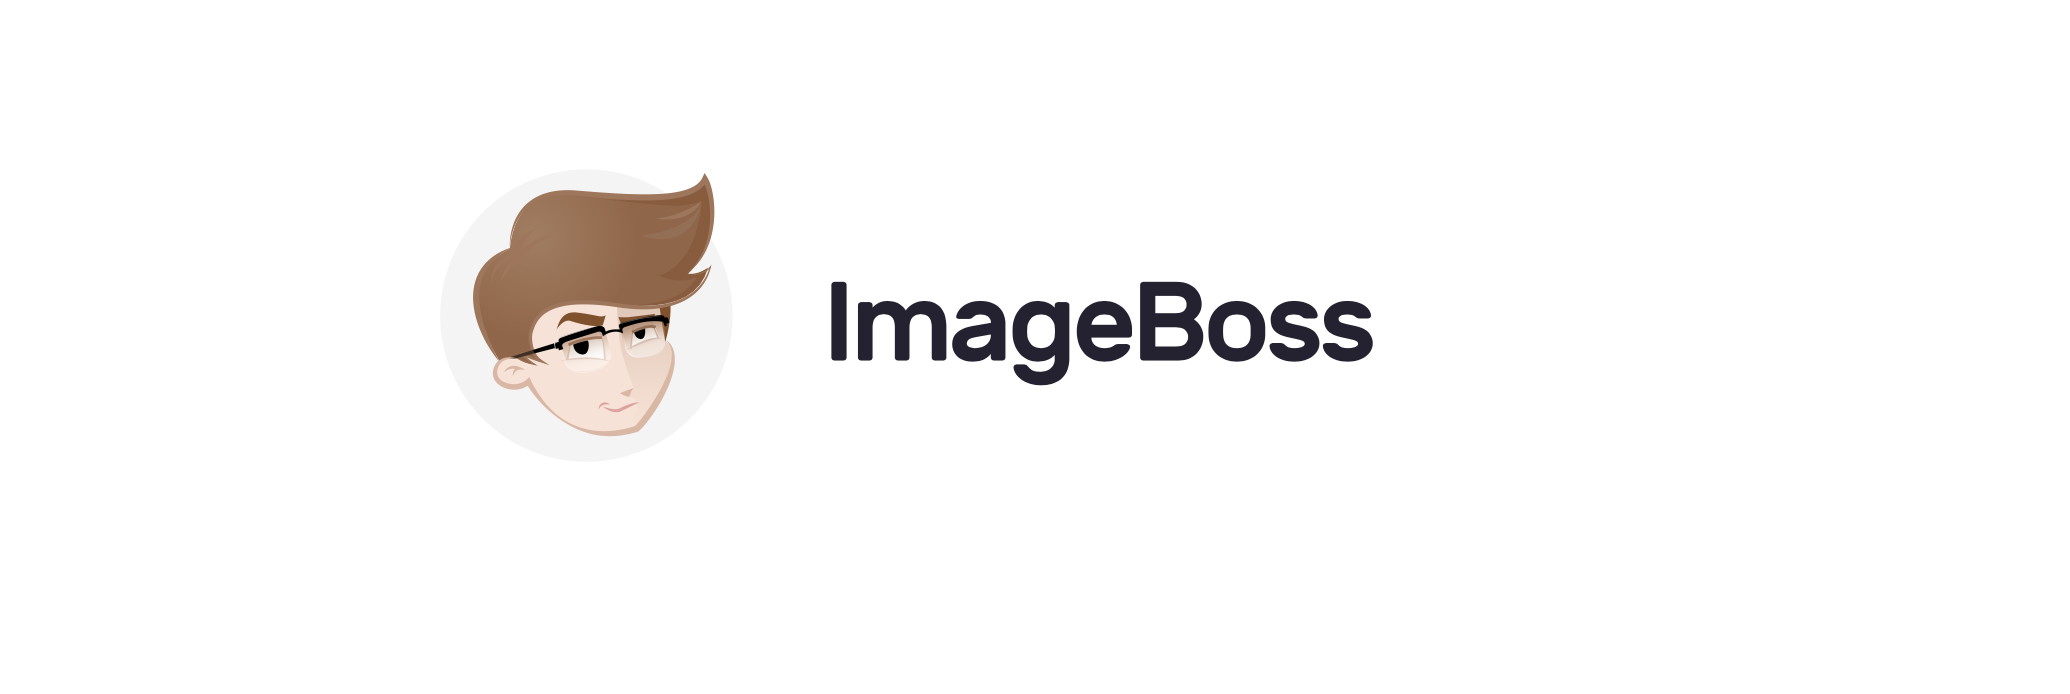 Avis ImageBoss : l’outil de traitement d’images à la demande - Appvizer